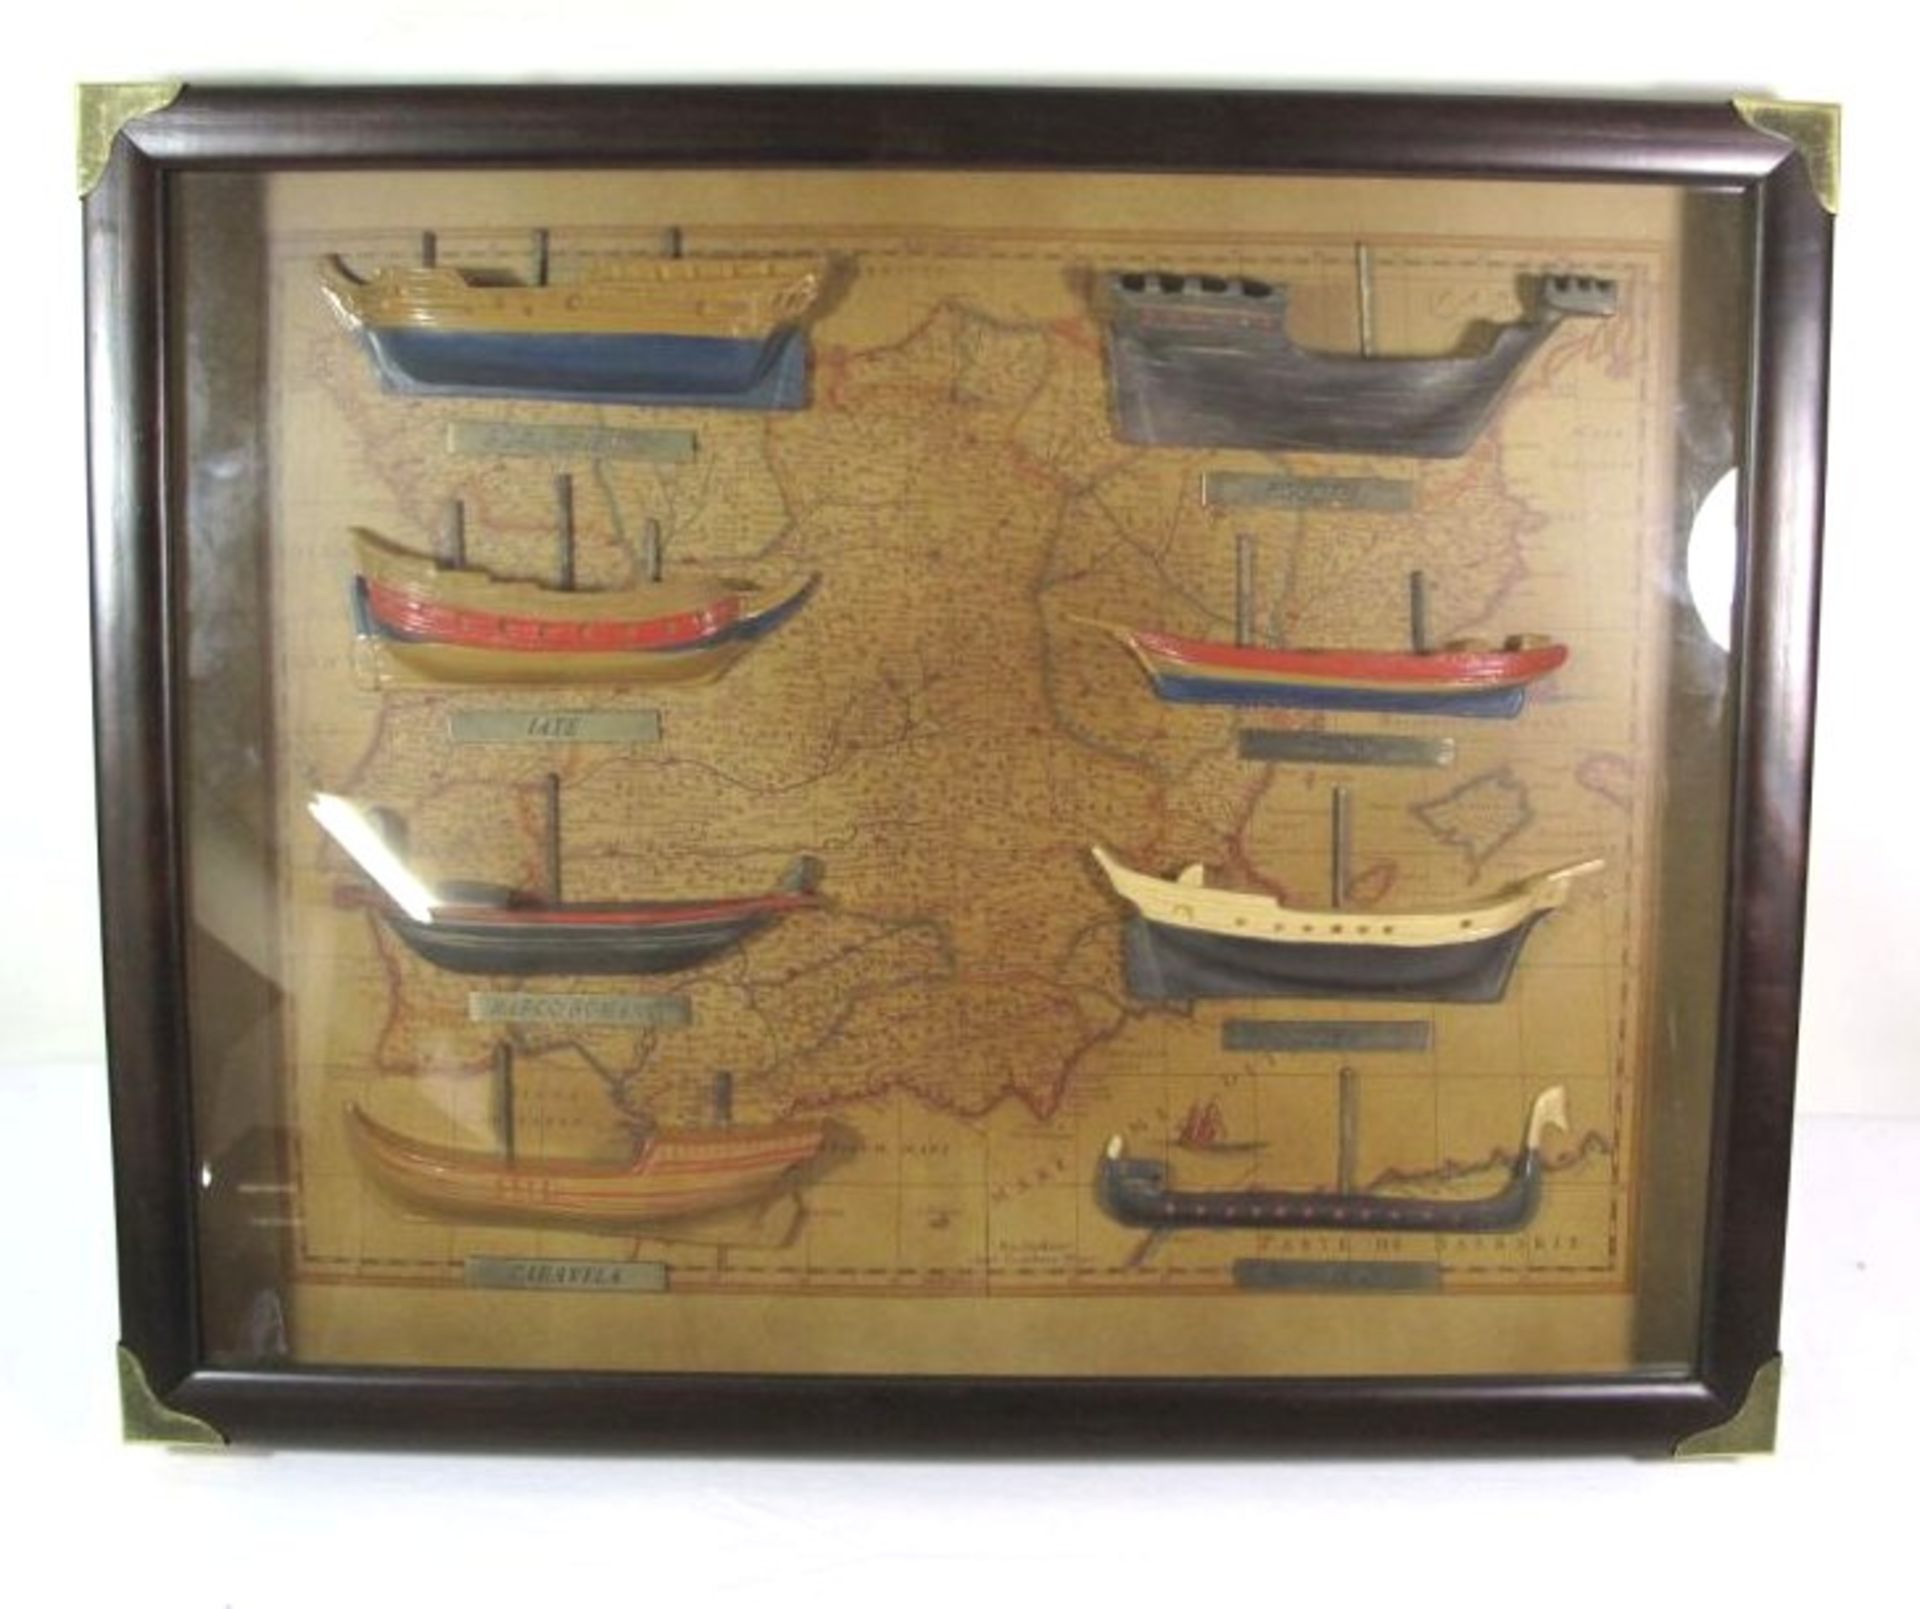 maritimer Schaukasten, Schiffstypen, 41,5 x 51,5cm.